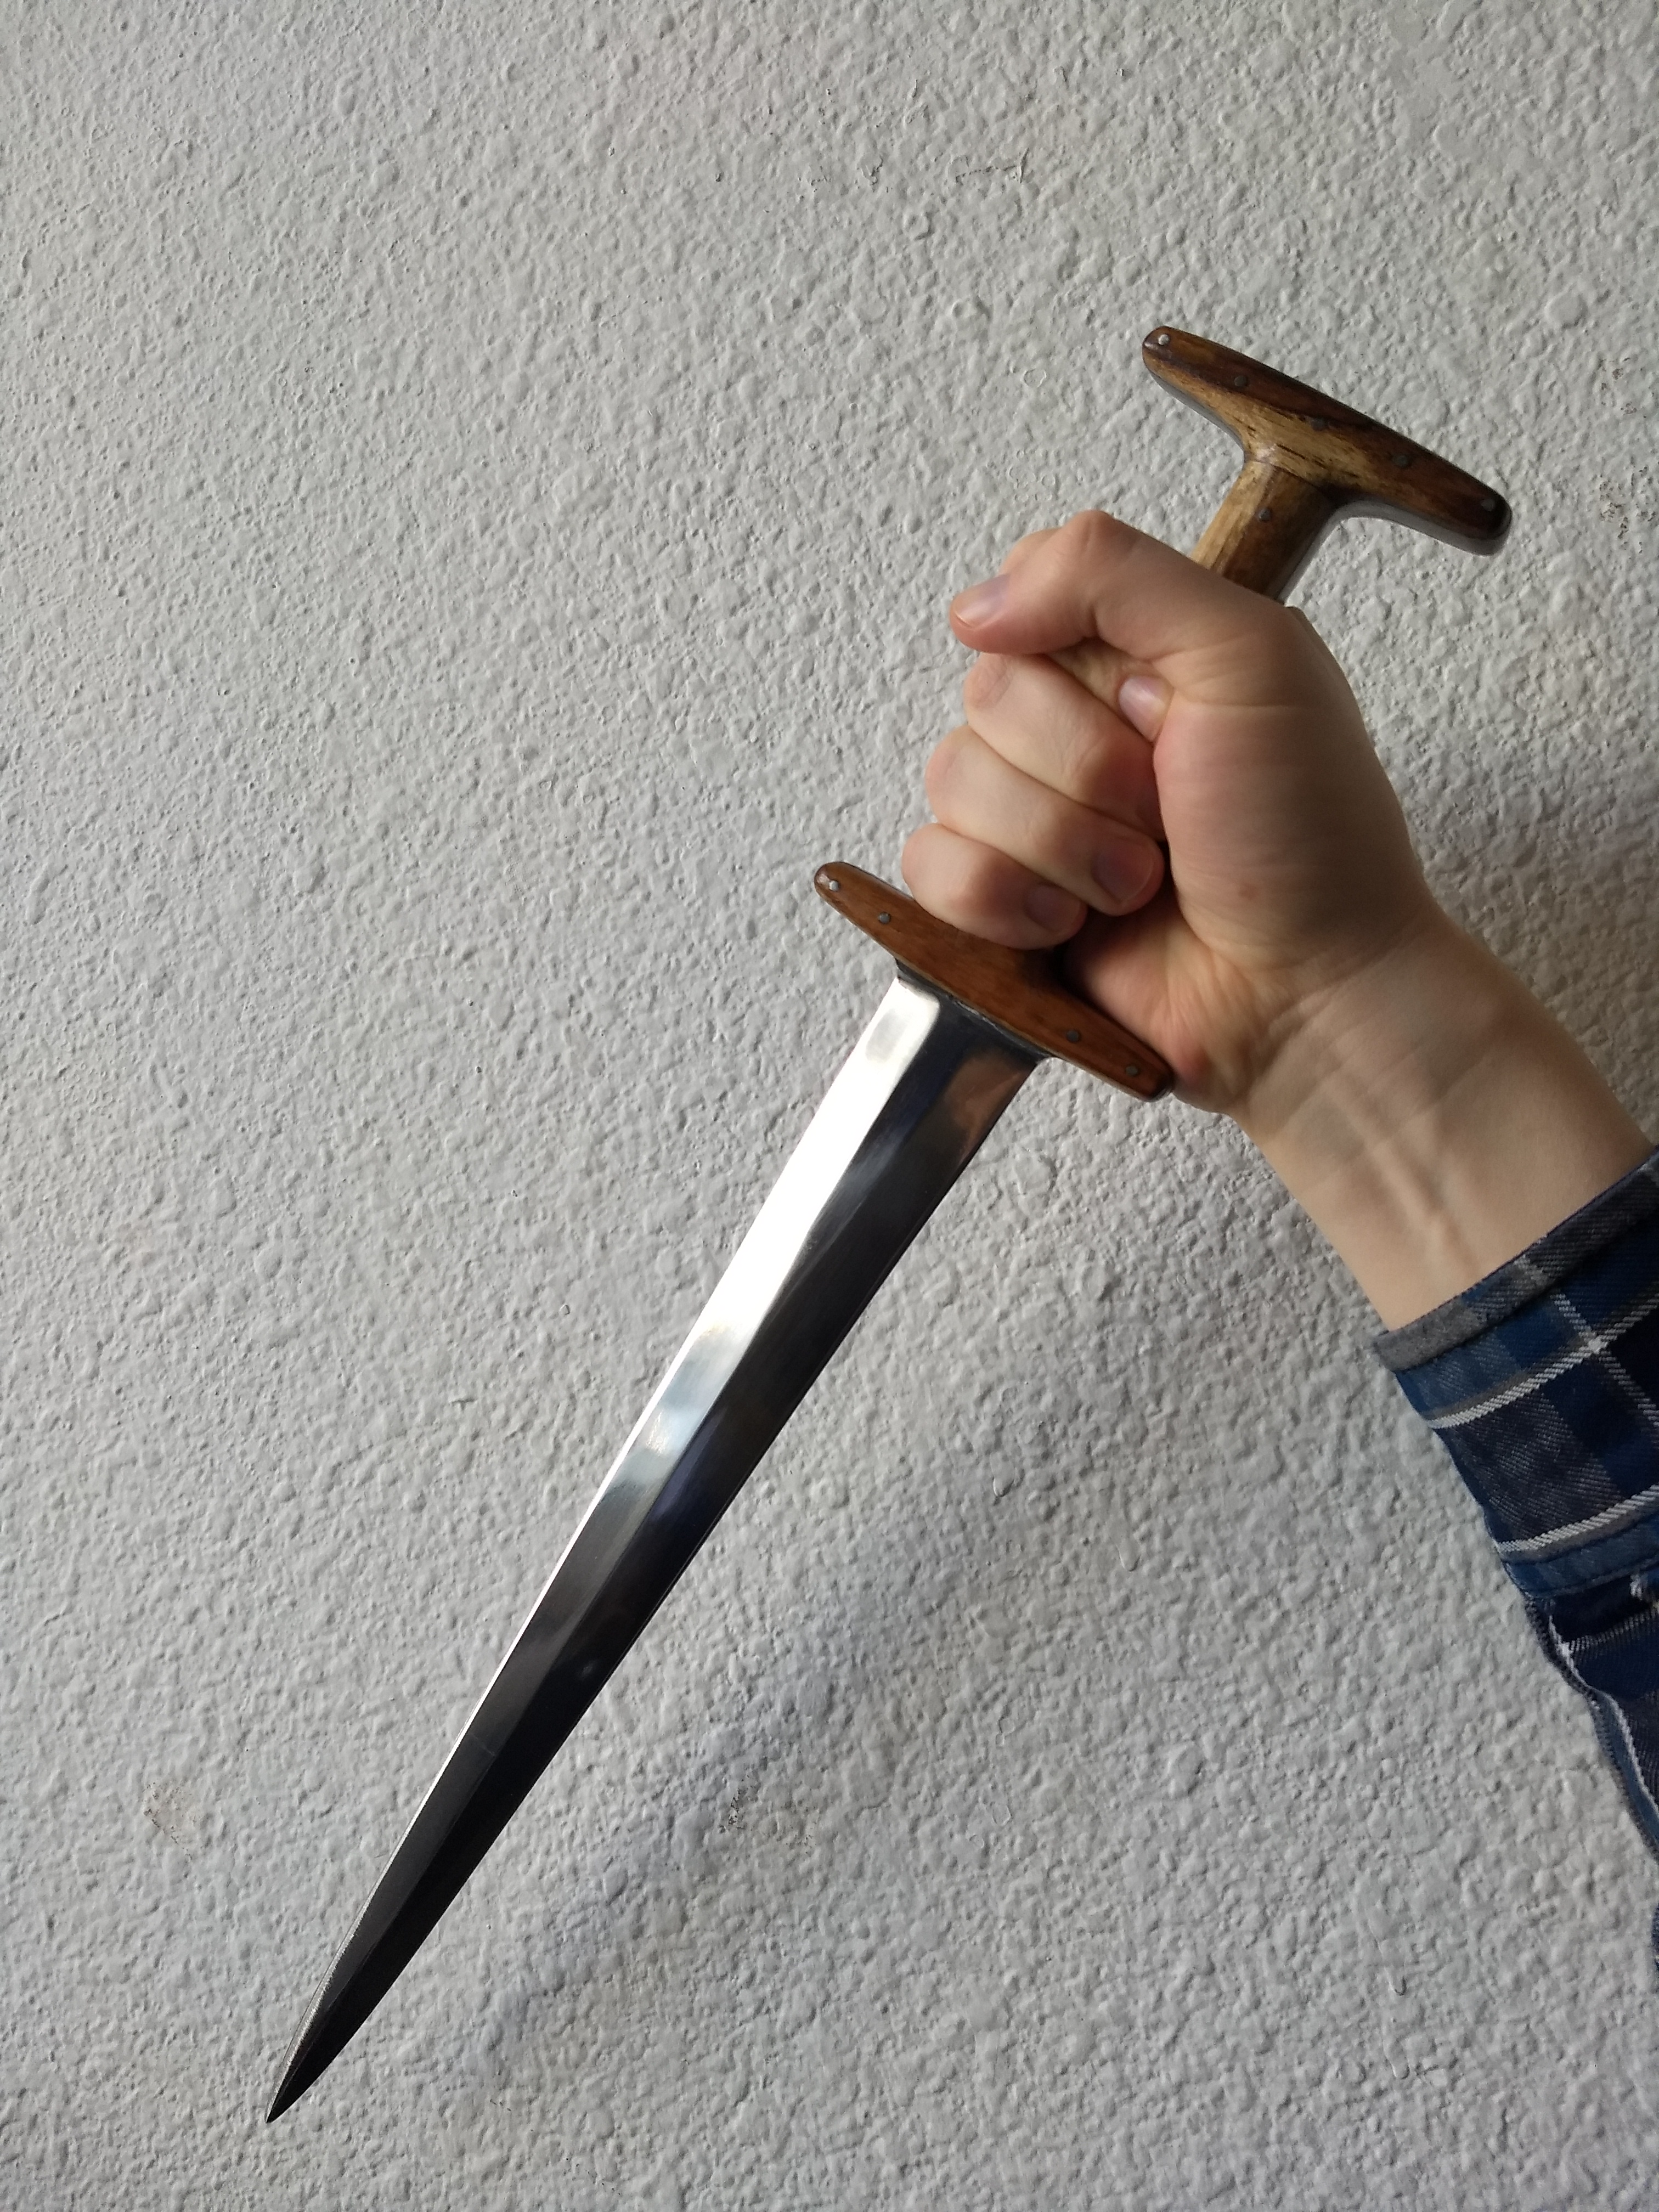 A hand gripping a dagger with a wooden hilt